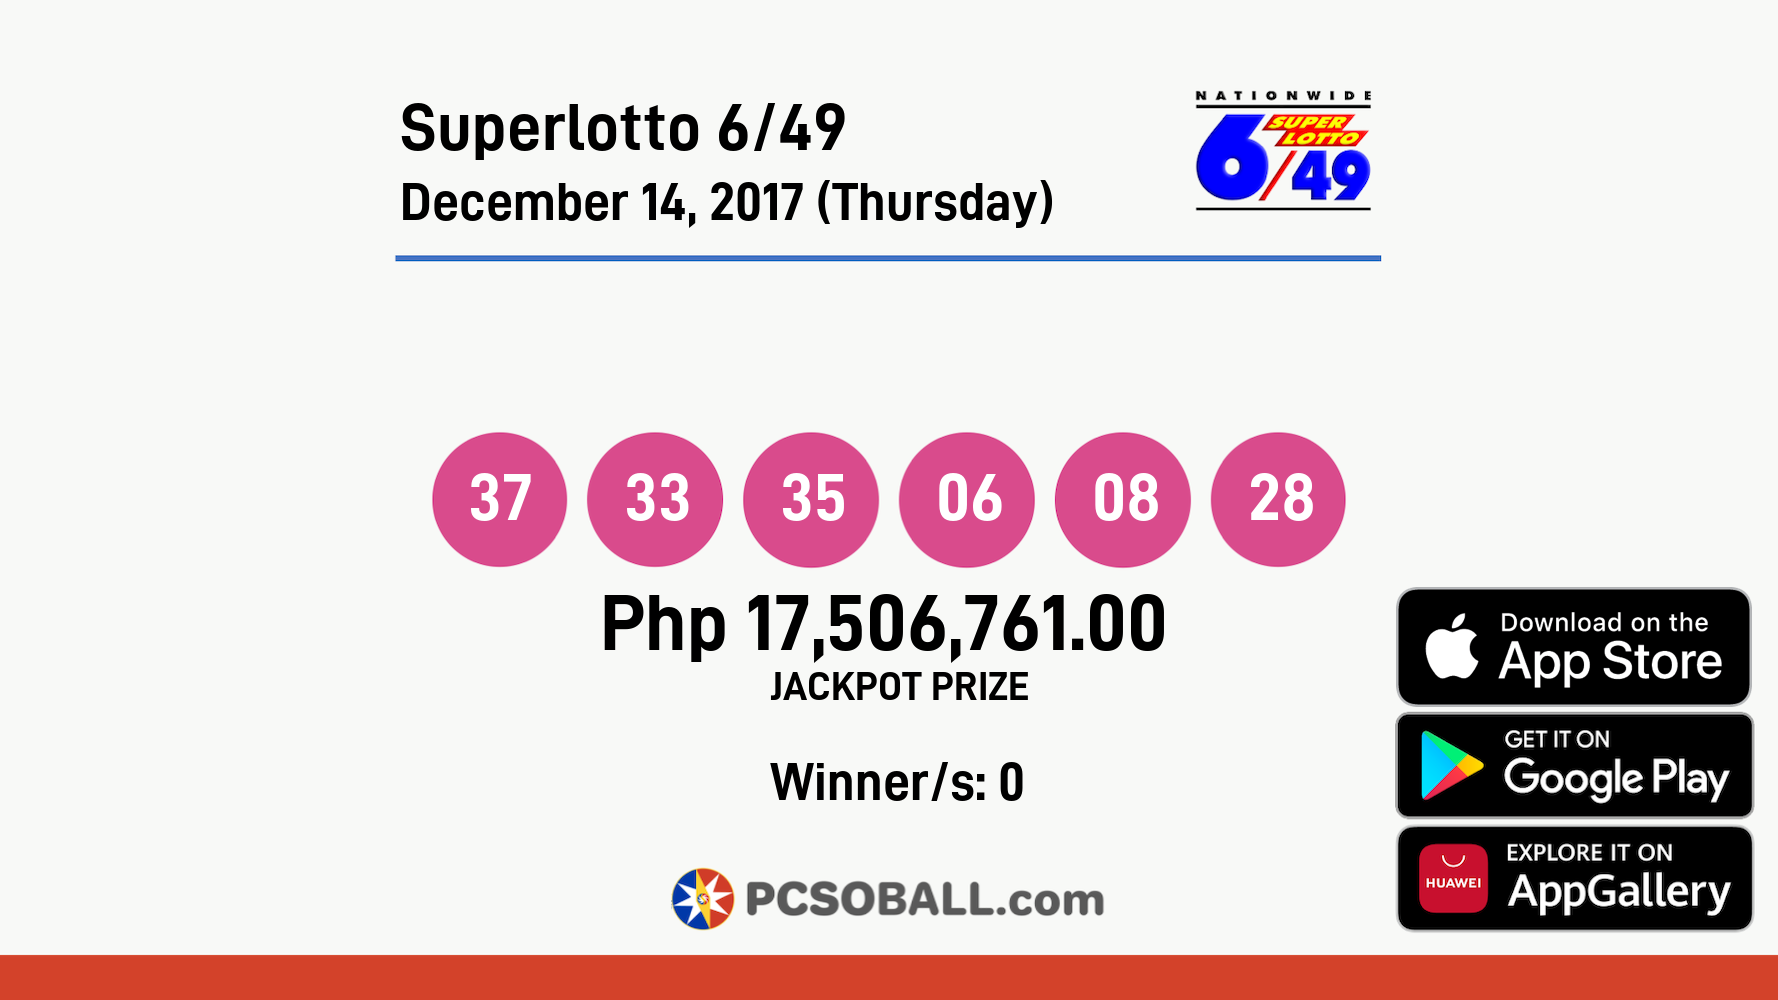 Superlotto 6/49 December 14, 2017 (Thursday) Result